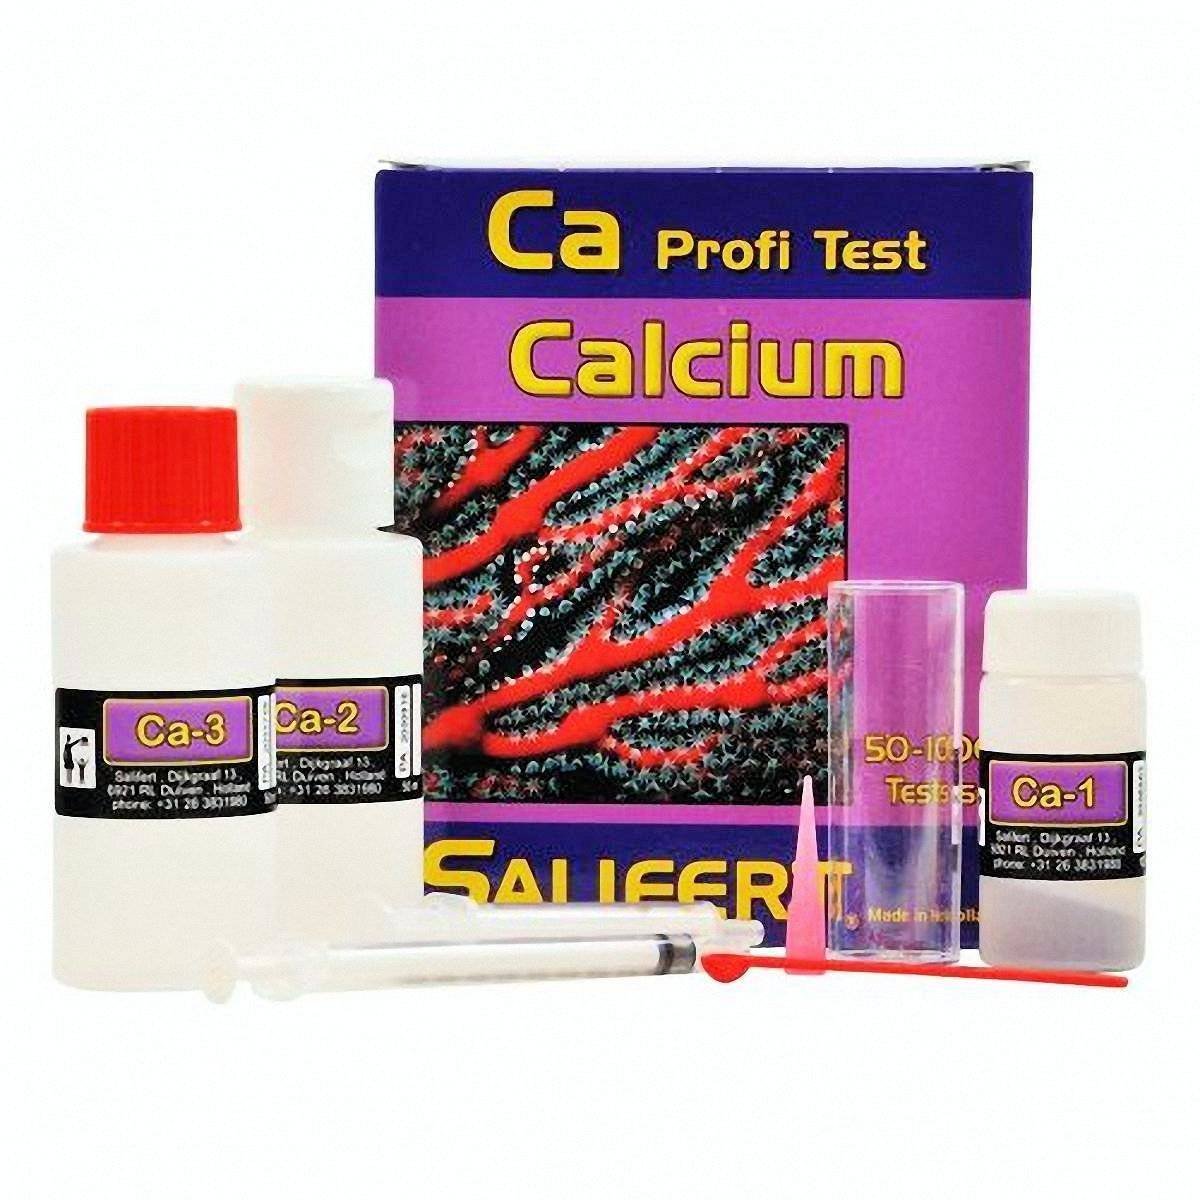 Salifert Calcium Ca Profit test (50-100 tests)